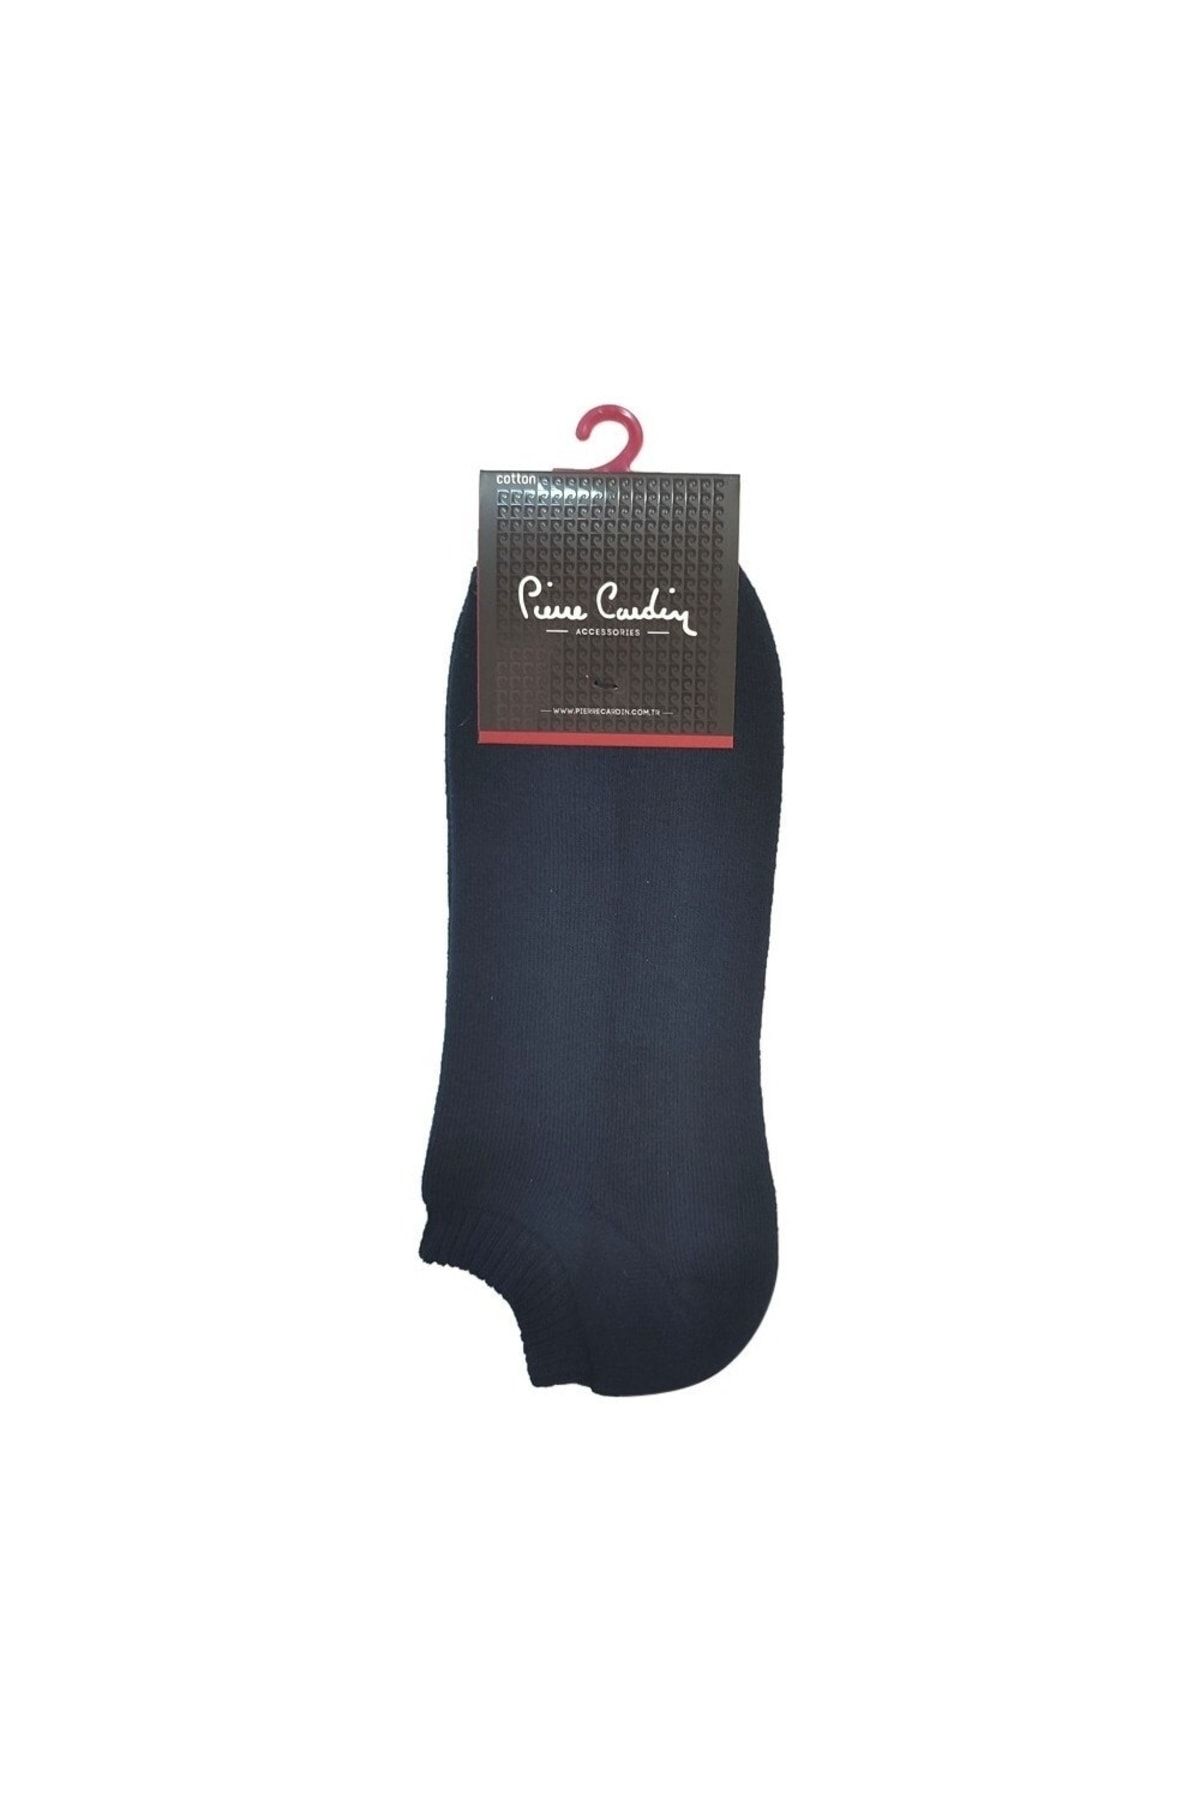 Pierre Cardin Pier Cardin Kadın 36-40 Havlu Patik Çorap Pıer4300